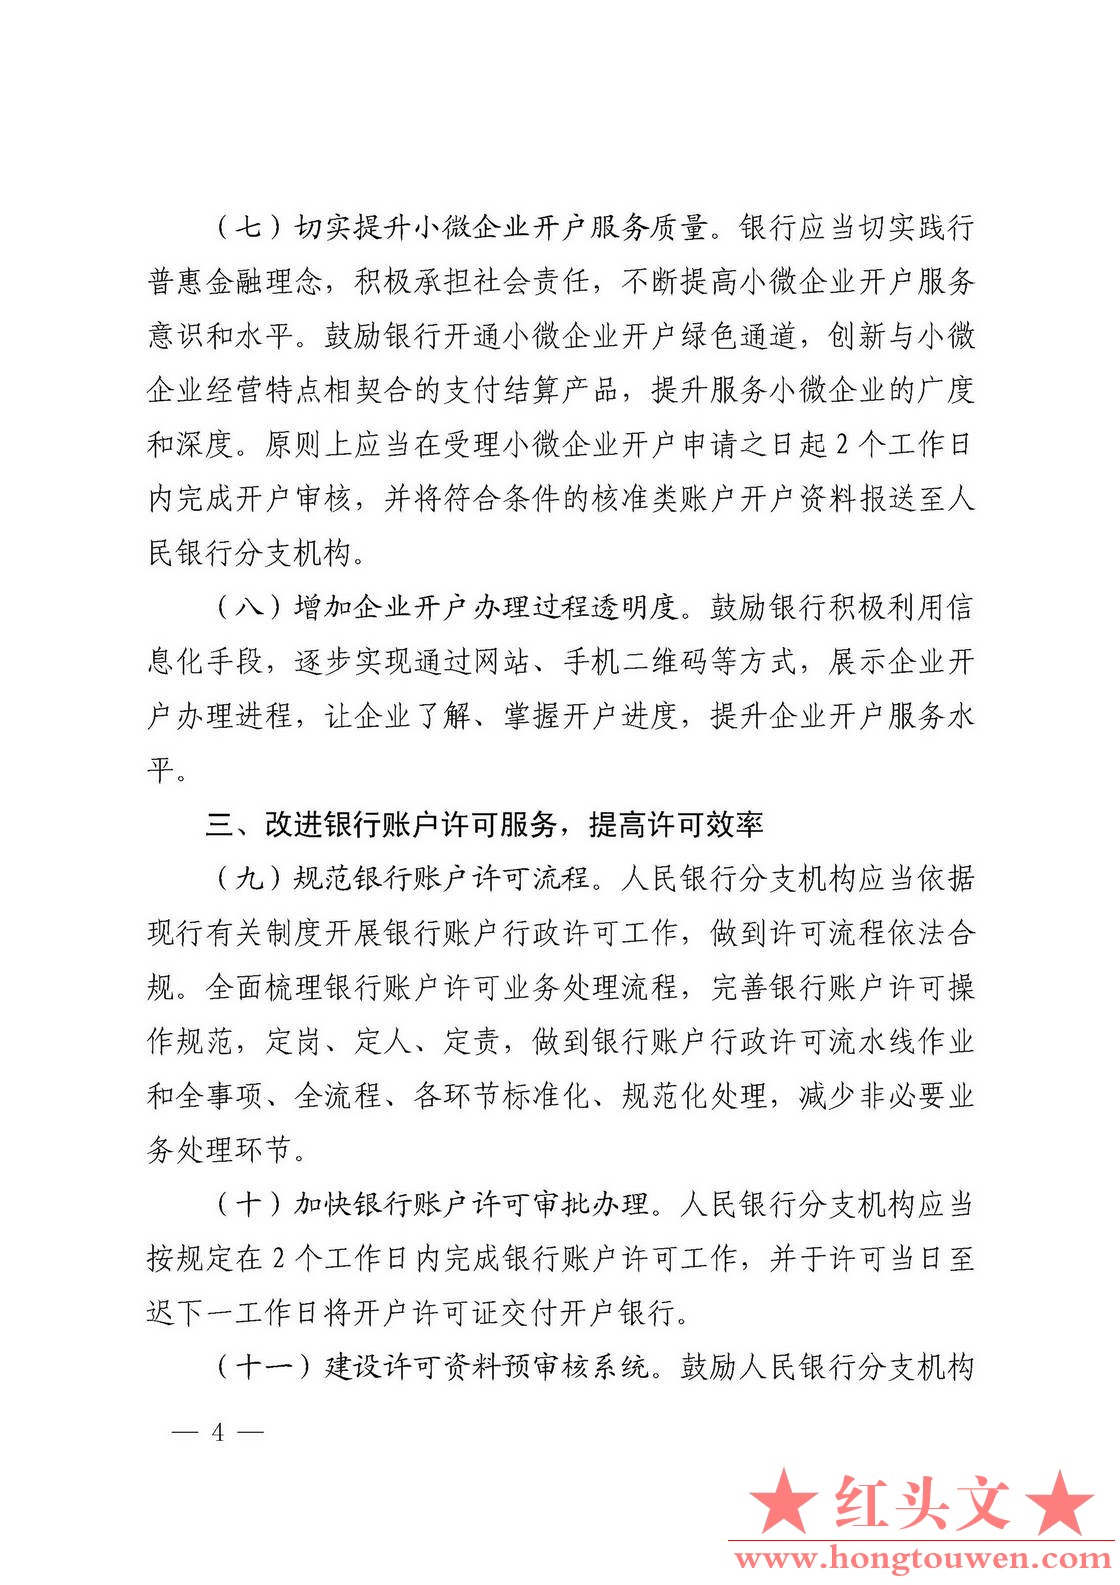 银发[2017]288号-中国人民银行关于优化企业开户服务的指导意见_页面_4.jpg.jpg